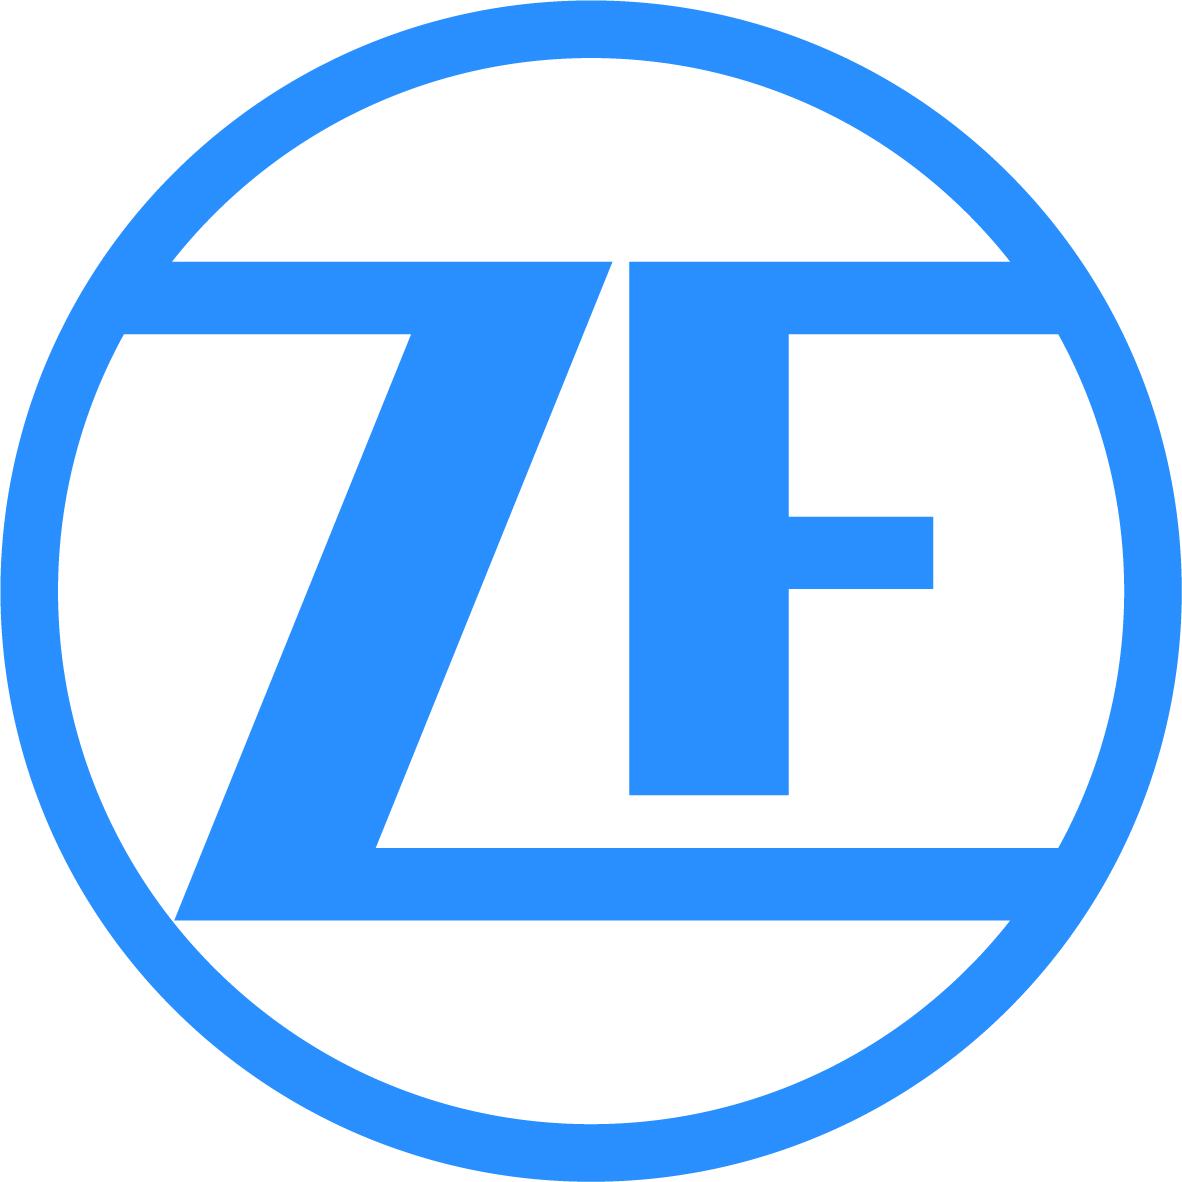 Sponsor PT ZFAG Aftermarket